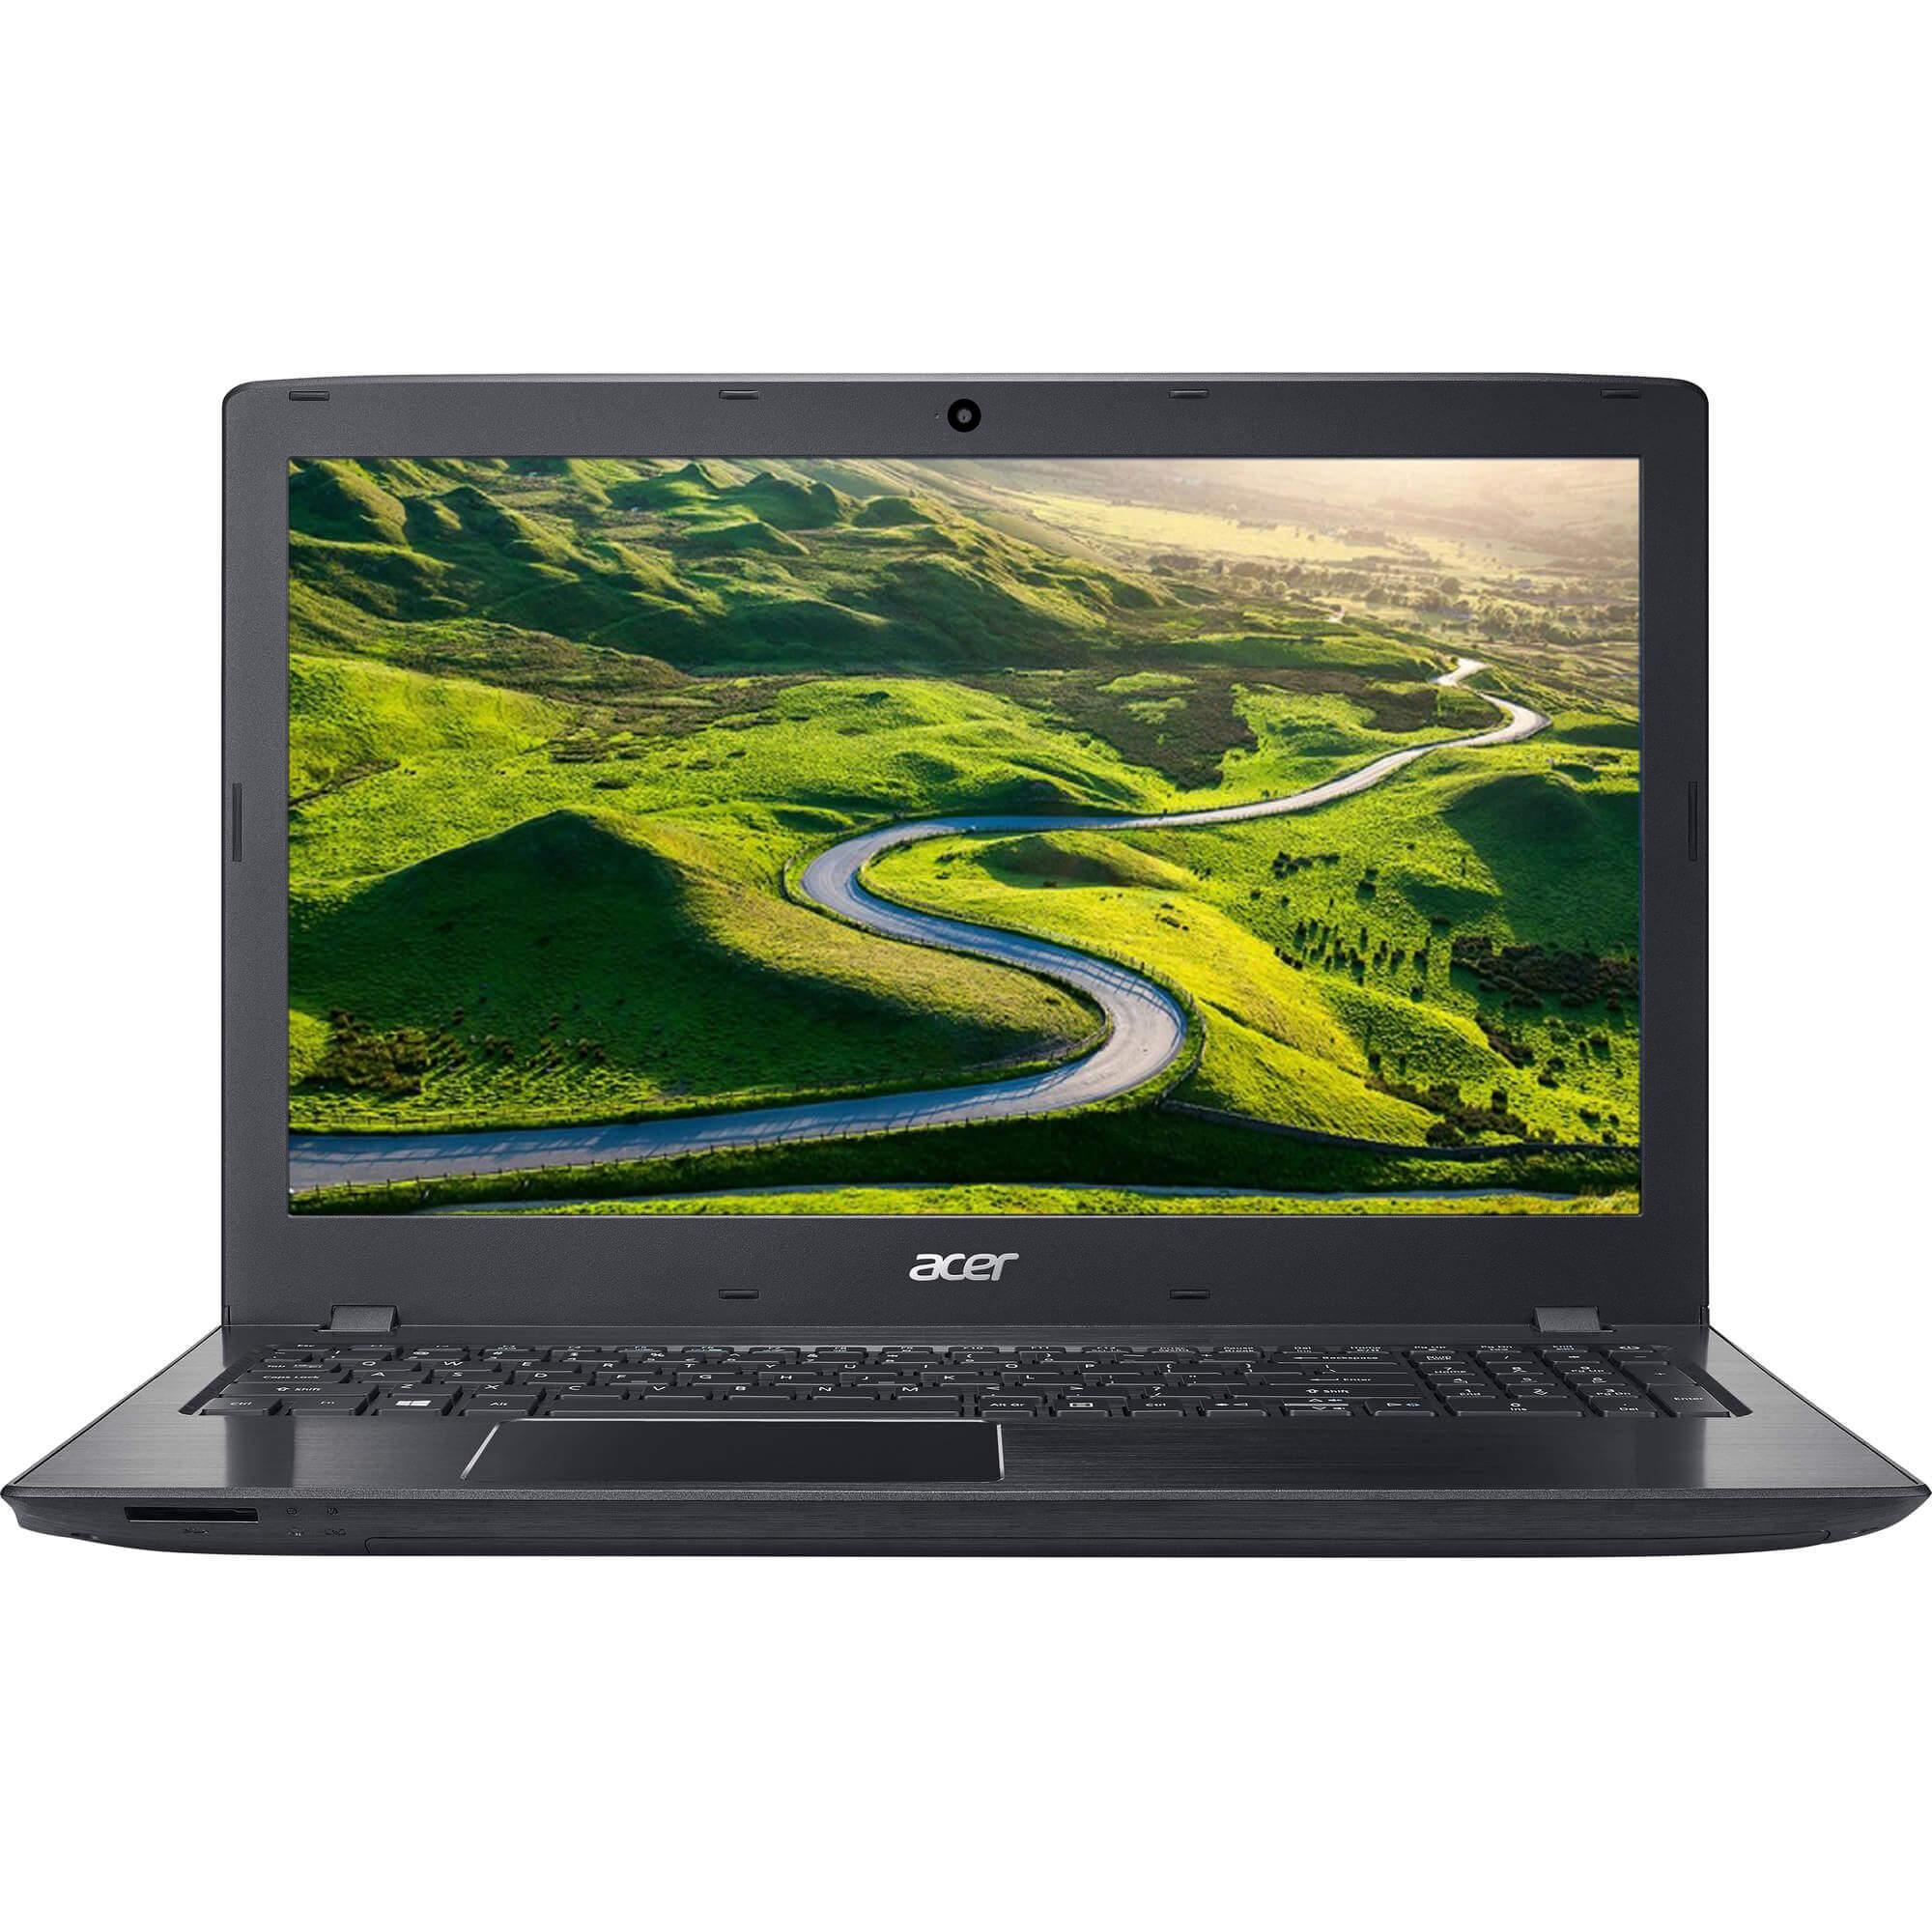  Laptop Acer E5-523G-946T, AMD A9-9410, 8GB DDR4, SSD 256GB, AMD Radeon R5 M430, Linux 